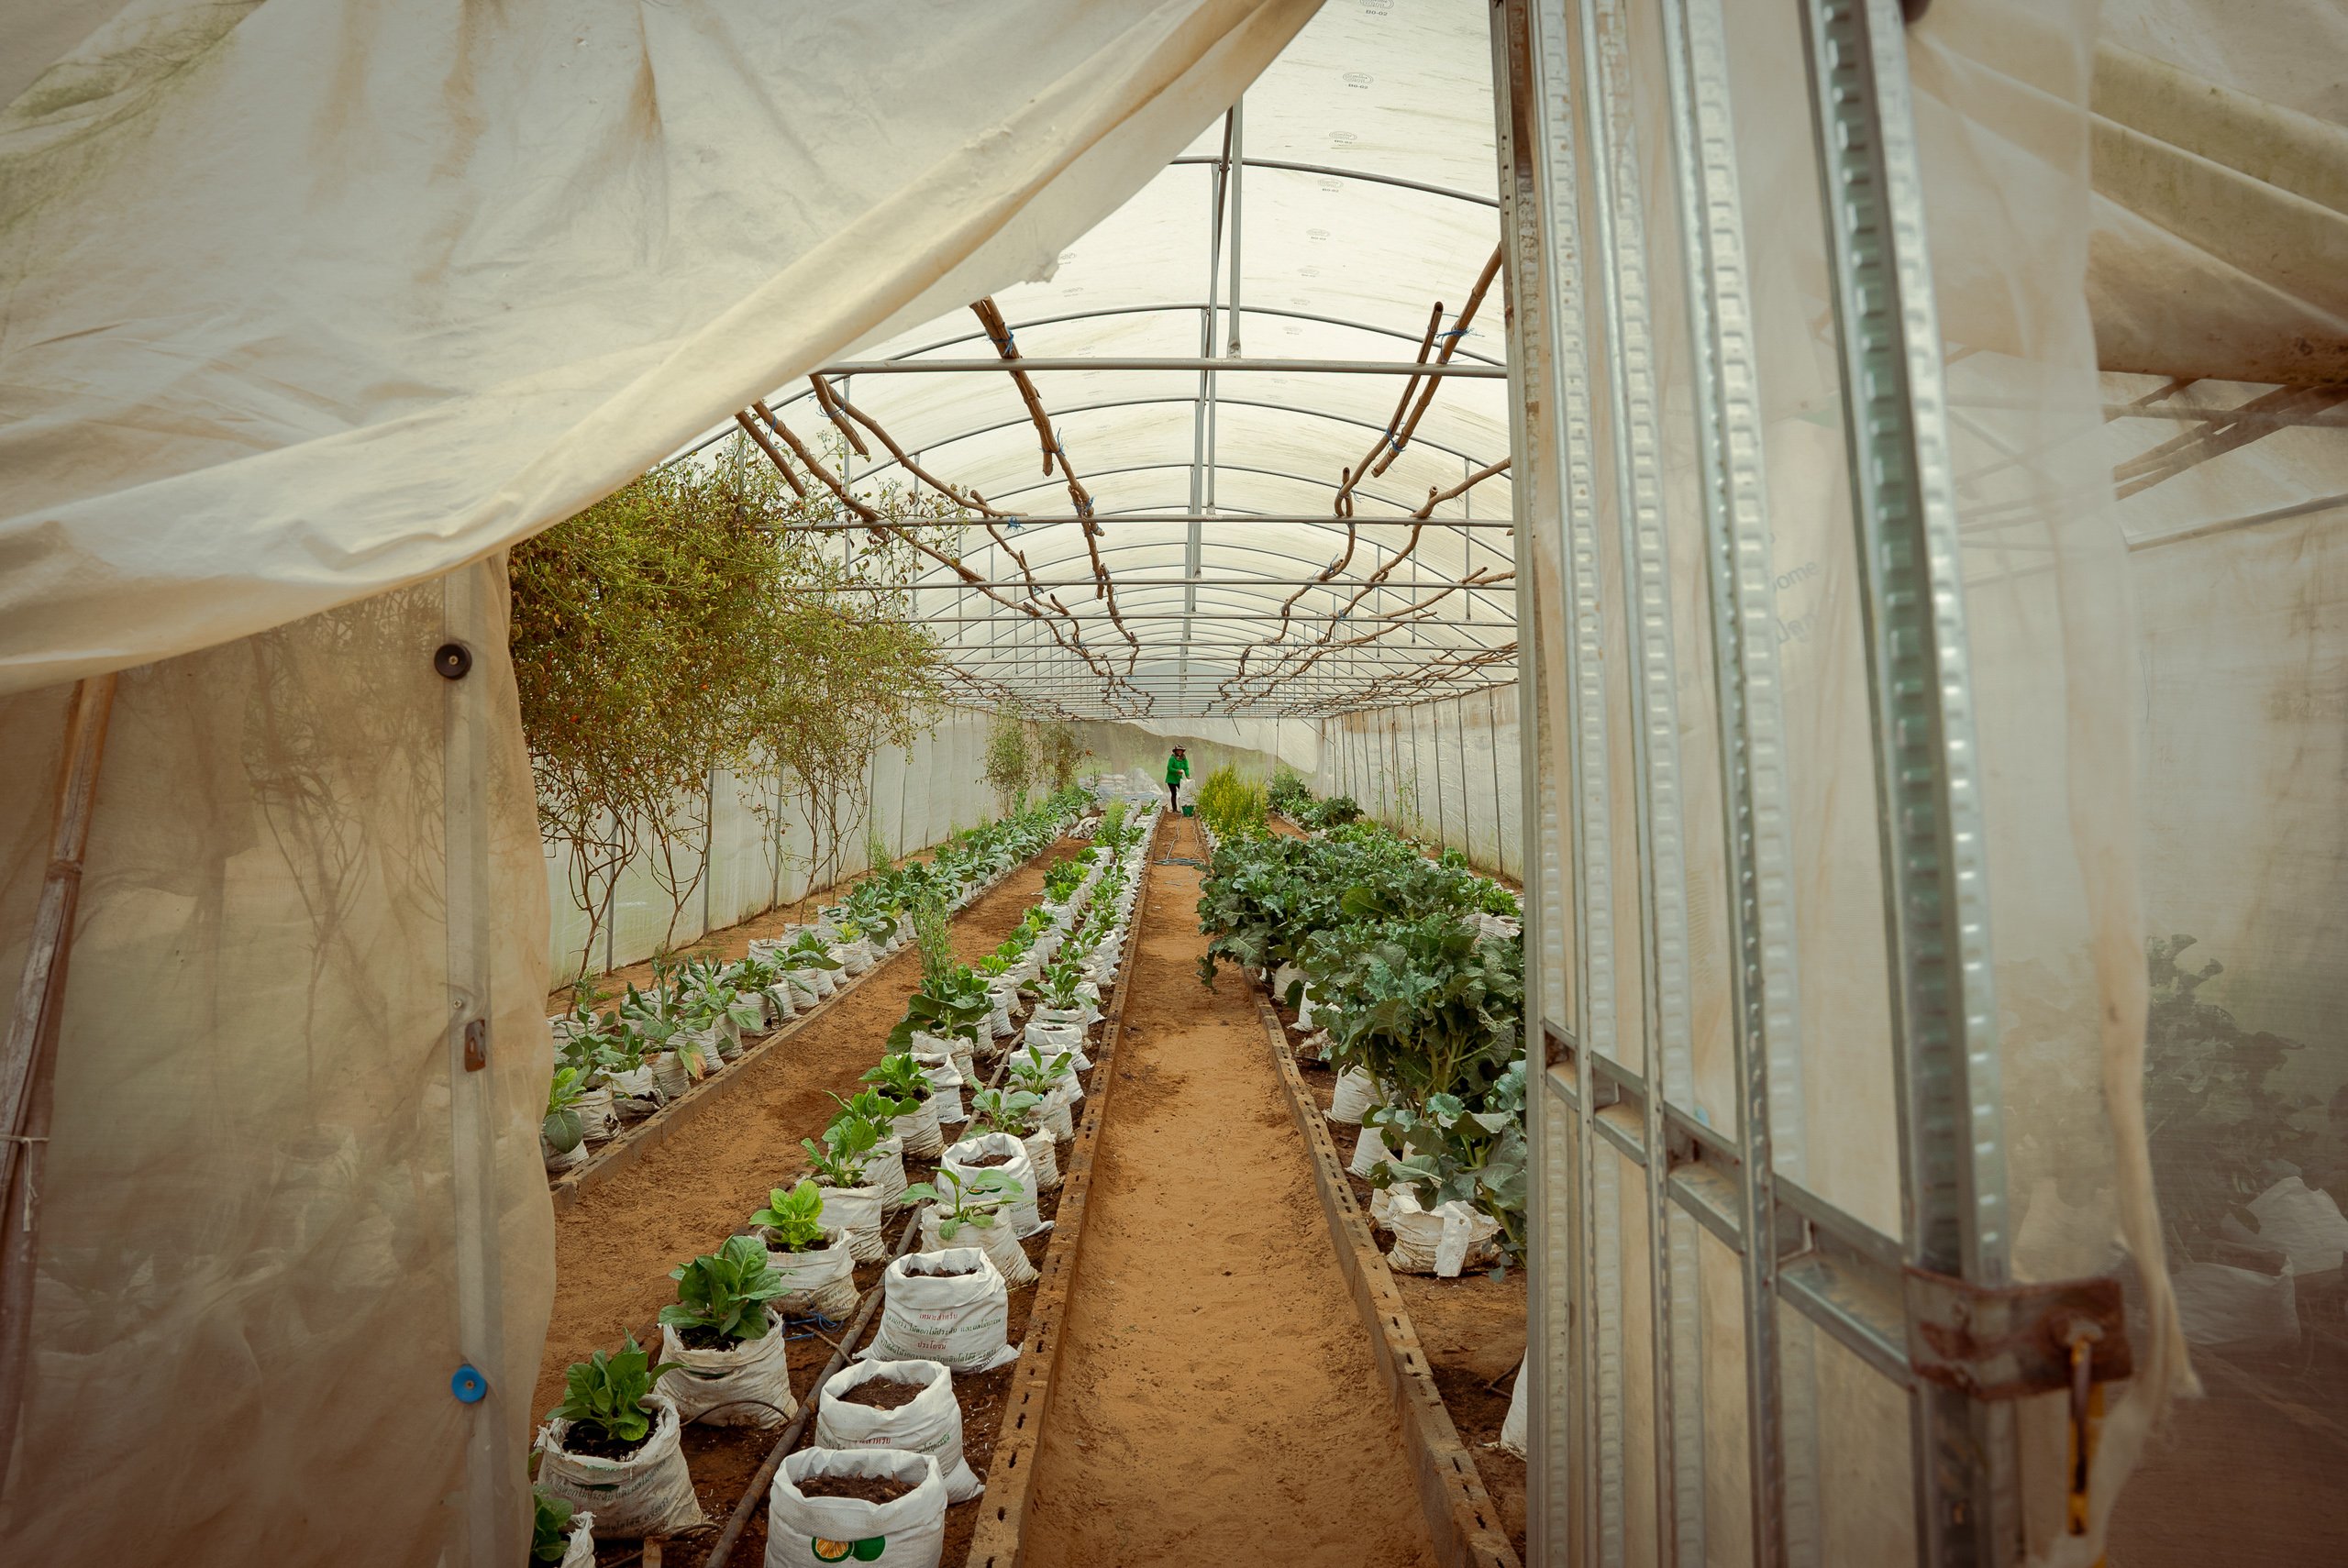 rows of seedlings in sacks inside greenhouse